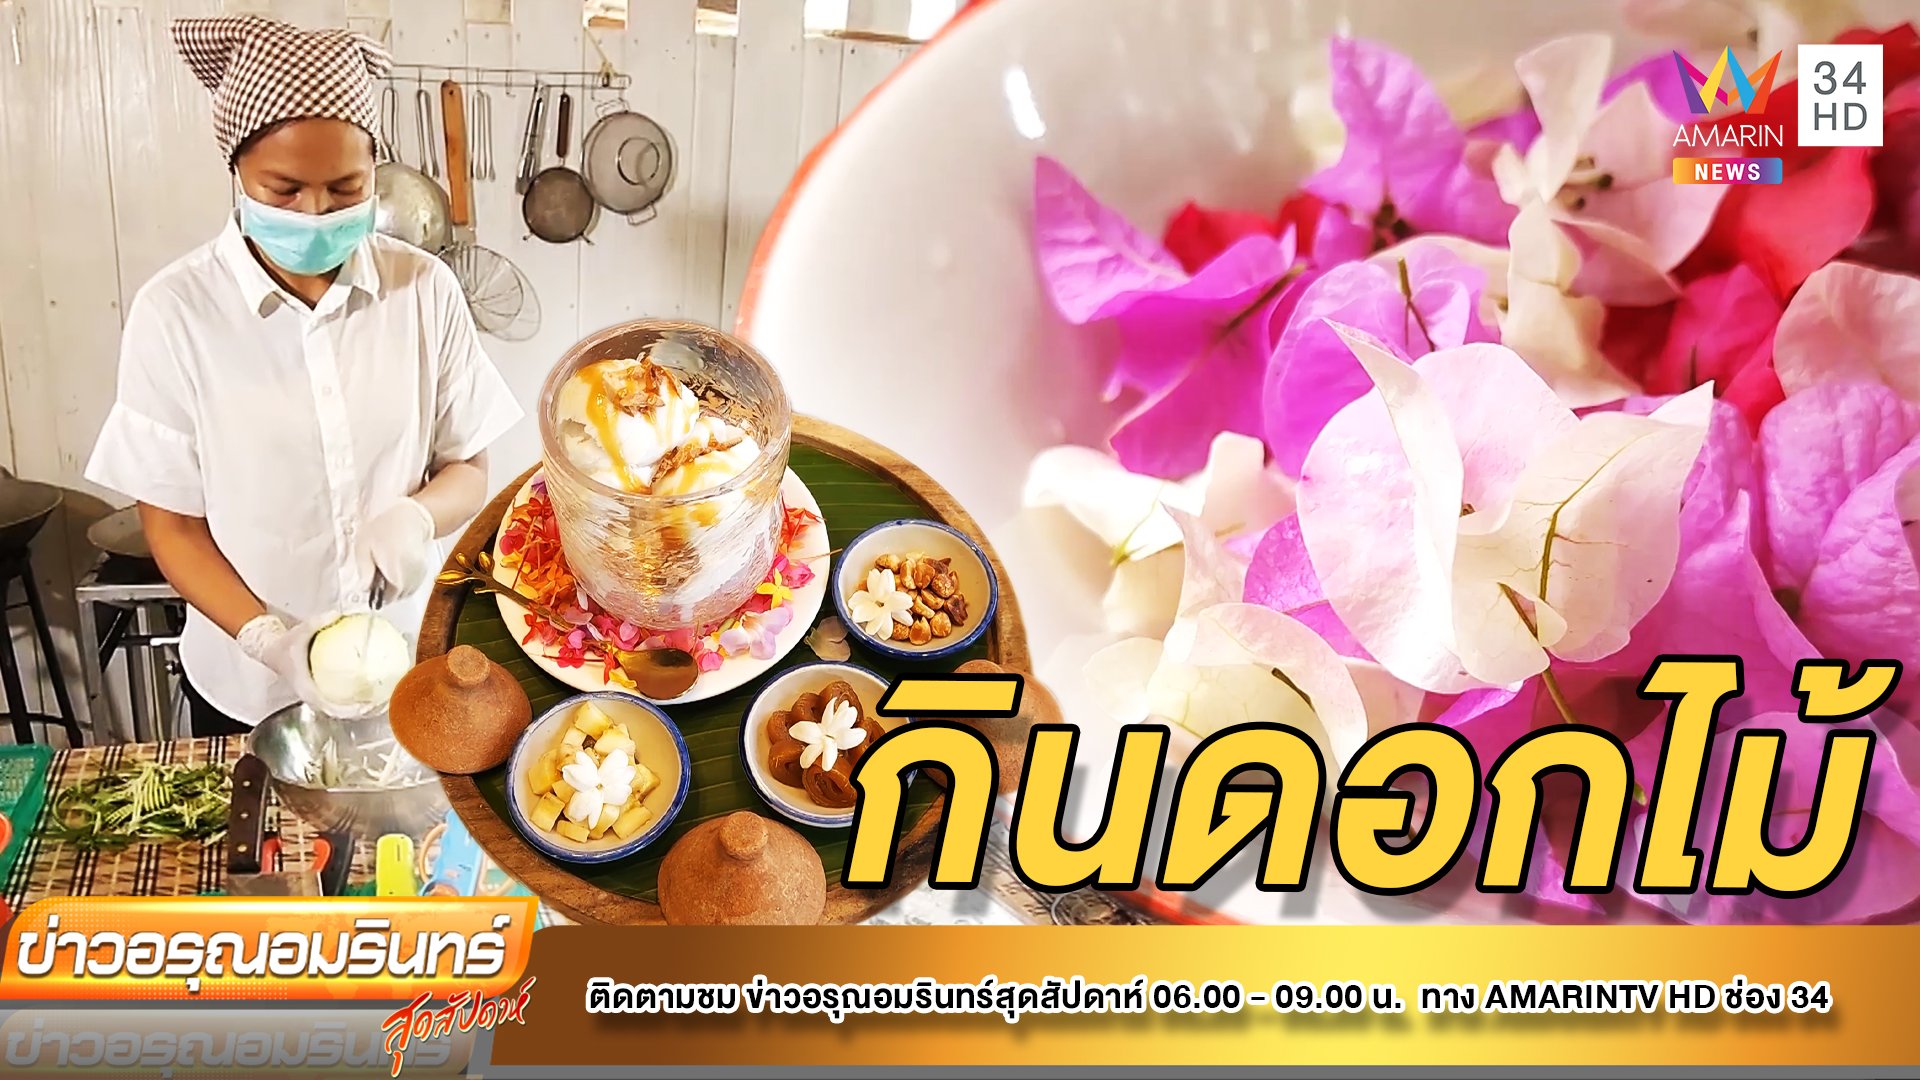 สุดสร้างสรรค์! เมนูอาหารทำจากดอกไม้ เอาใจคนรักสุขภาพ | ข่าวอรุณอมรินทร์ | 23 ก.ค. 65 | AMARIN TVHD34